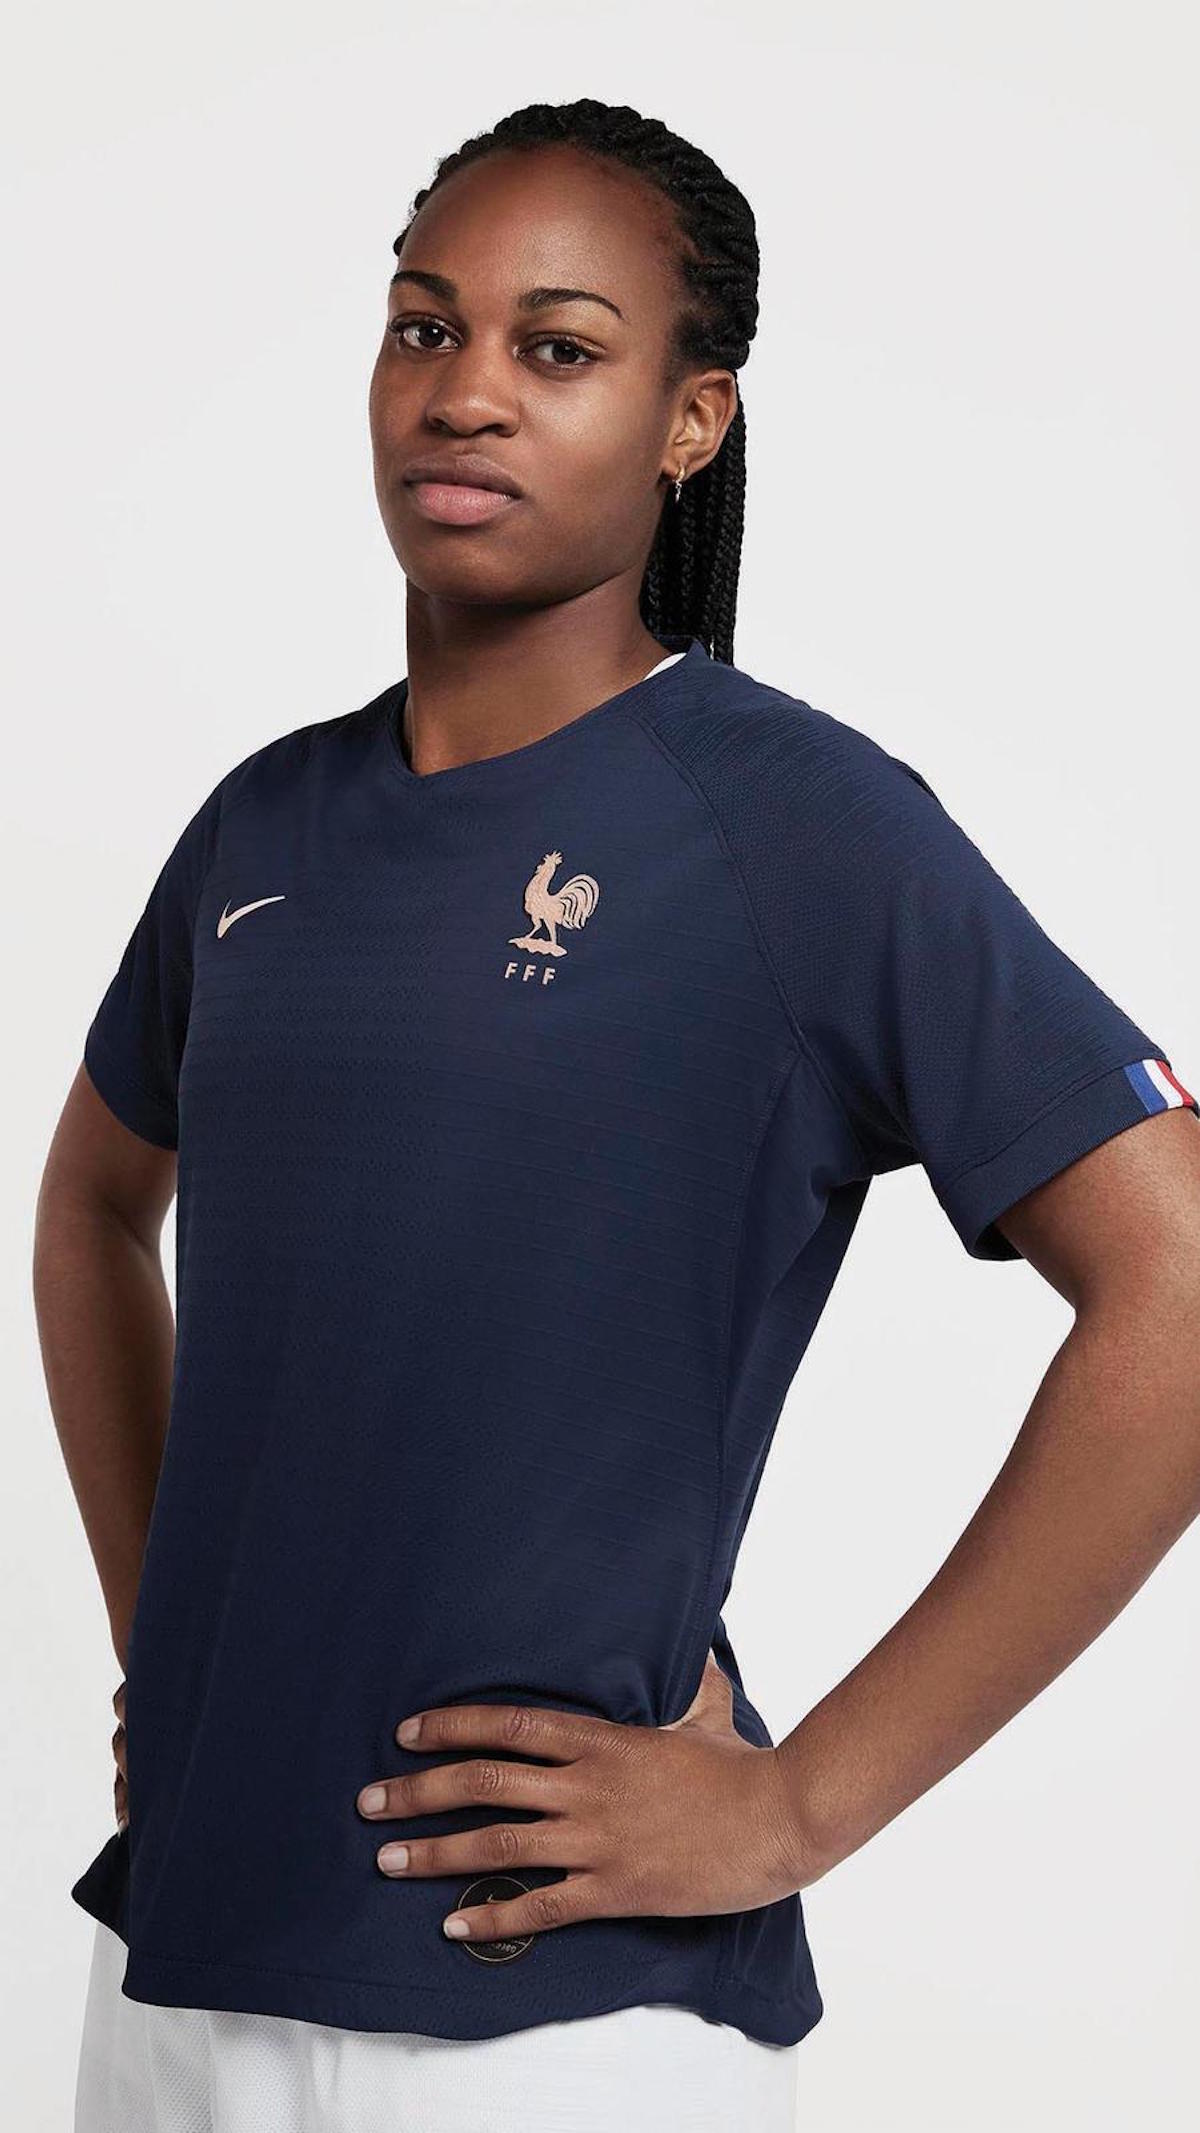 france women's national team jersey